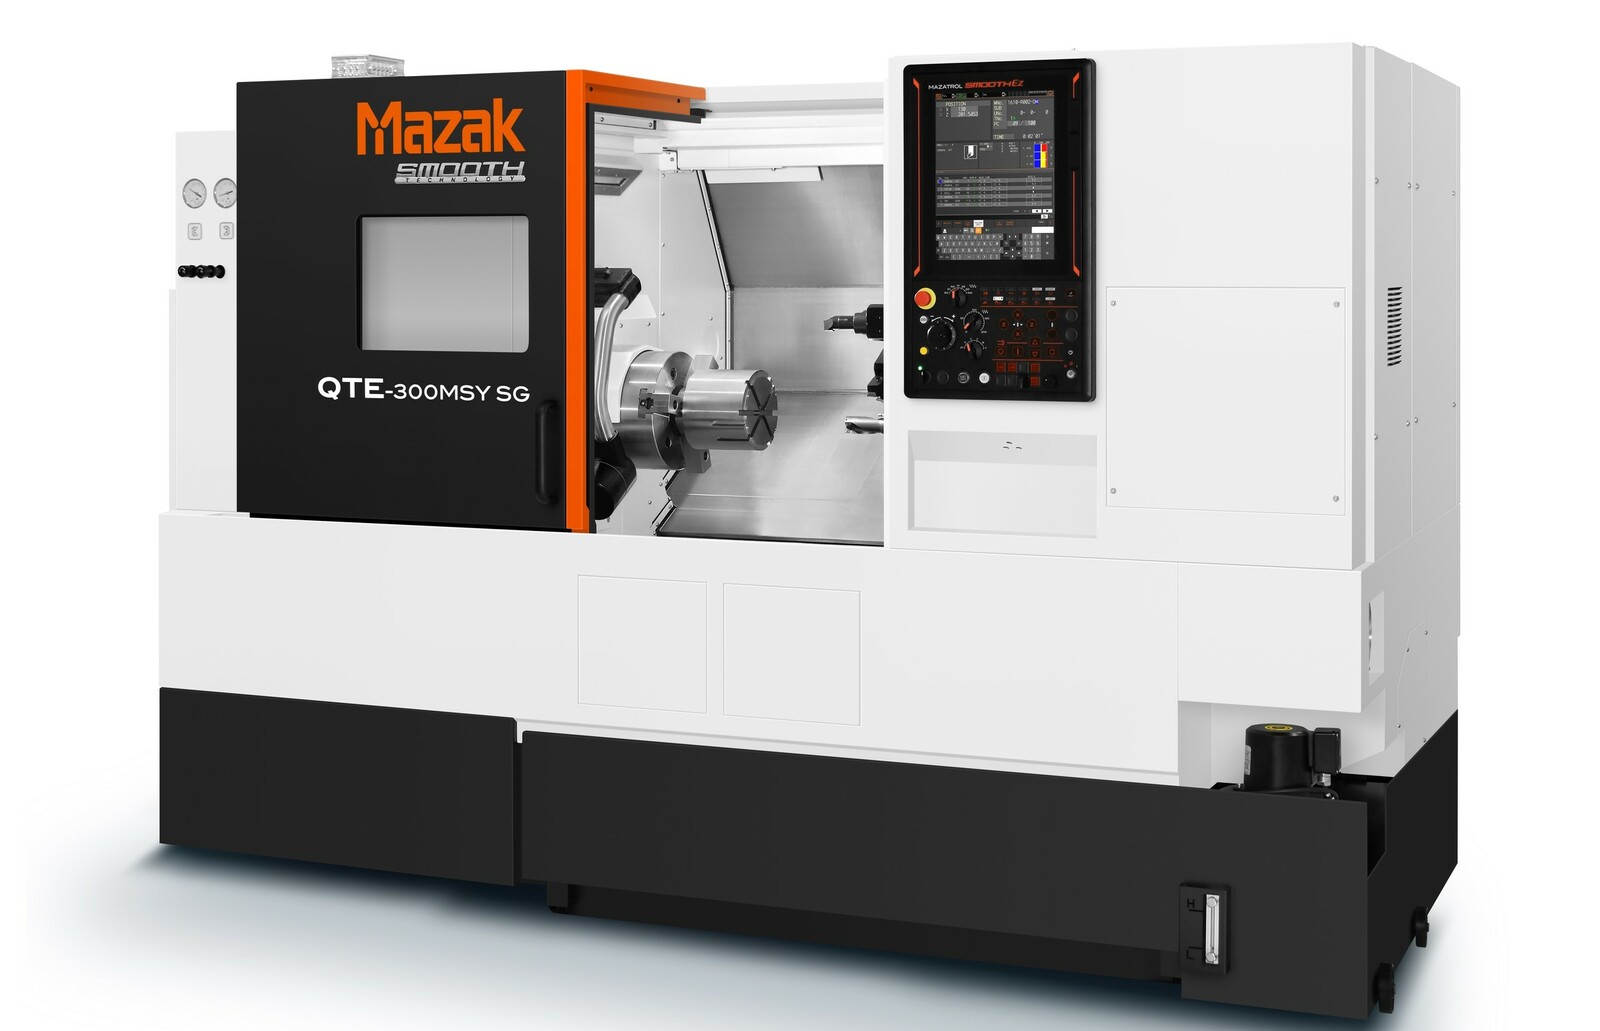 Das neueste Hochleistungs-Drehzentrum der QTE-Serie von Yamazaki Mazak für den Einsatz in kleinsten Maschinenhallen ist jetzt für europäische Anwender von Werkzeugmaschinen erhältlich.